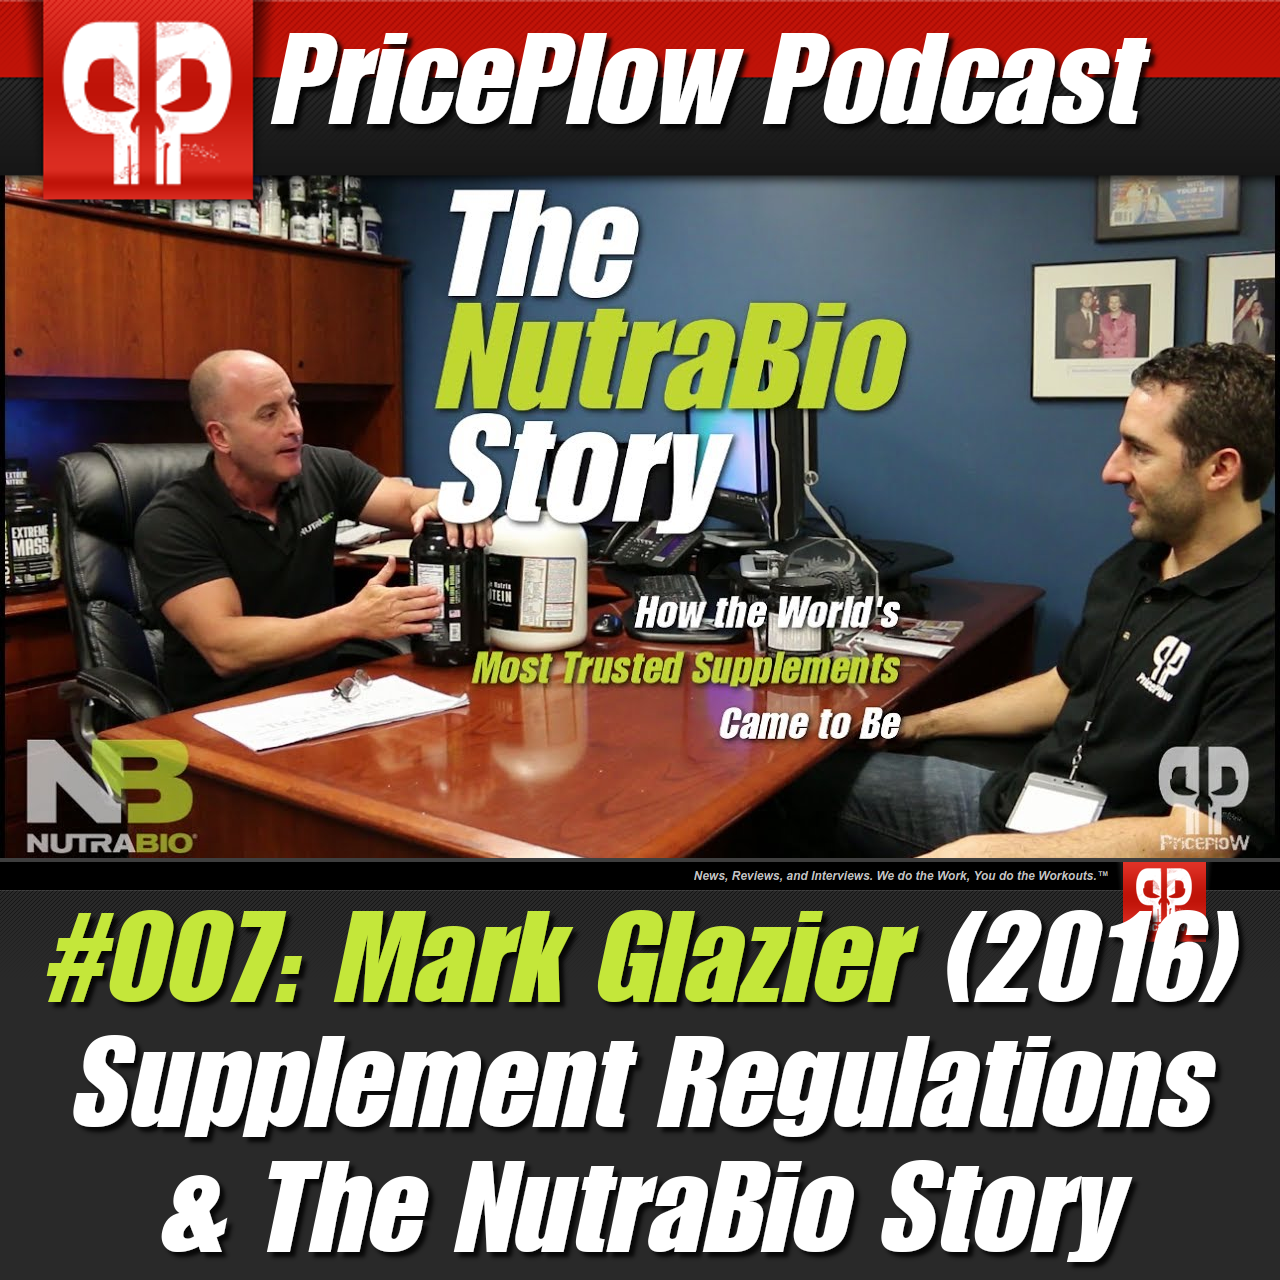 PricePlow Podcast #007: Mark Glazier of NutraBio (2016)